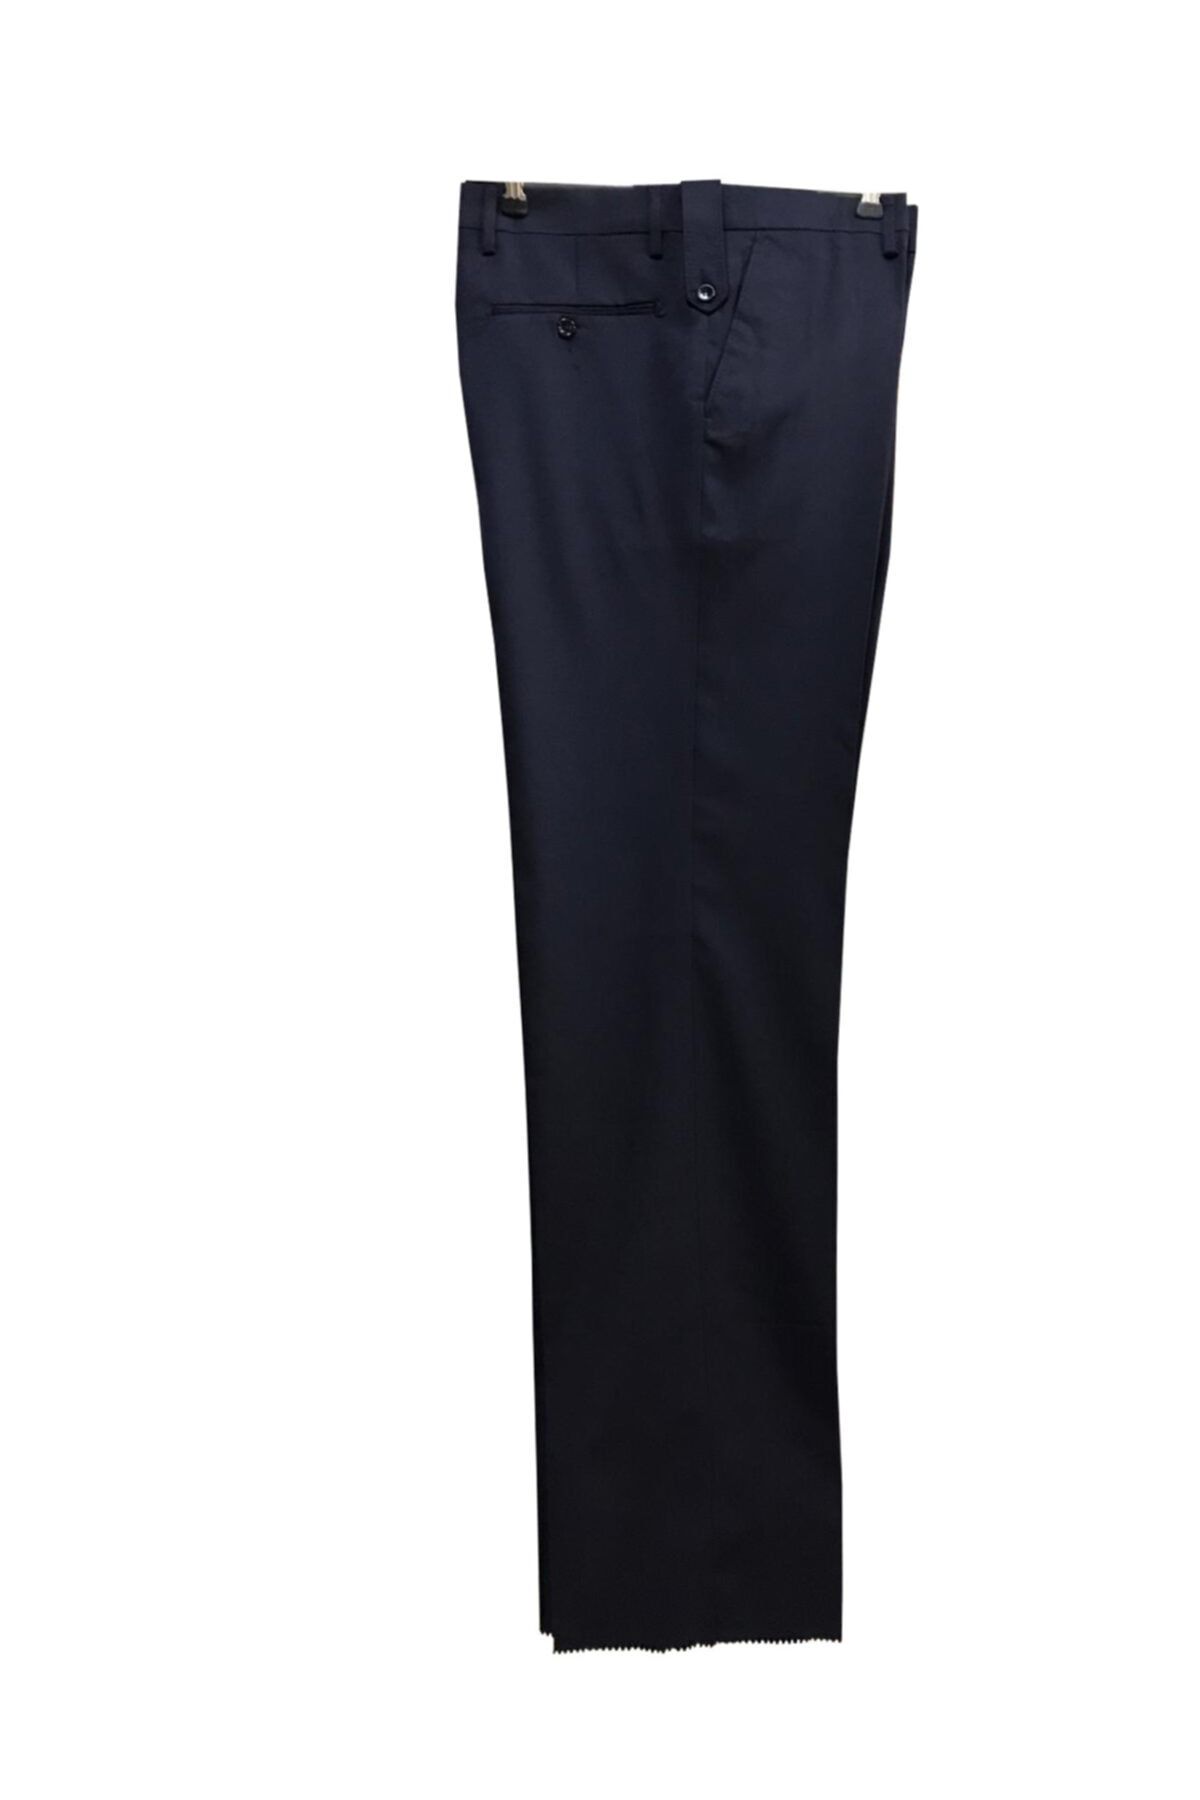 Form Kurumsal Personel İş Elbiseleri Polyester Viskon Gabardin Klasik Erkek Pantolonu